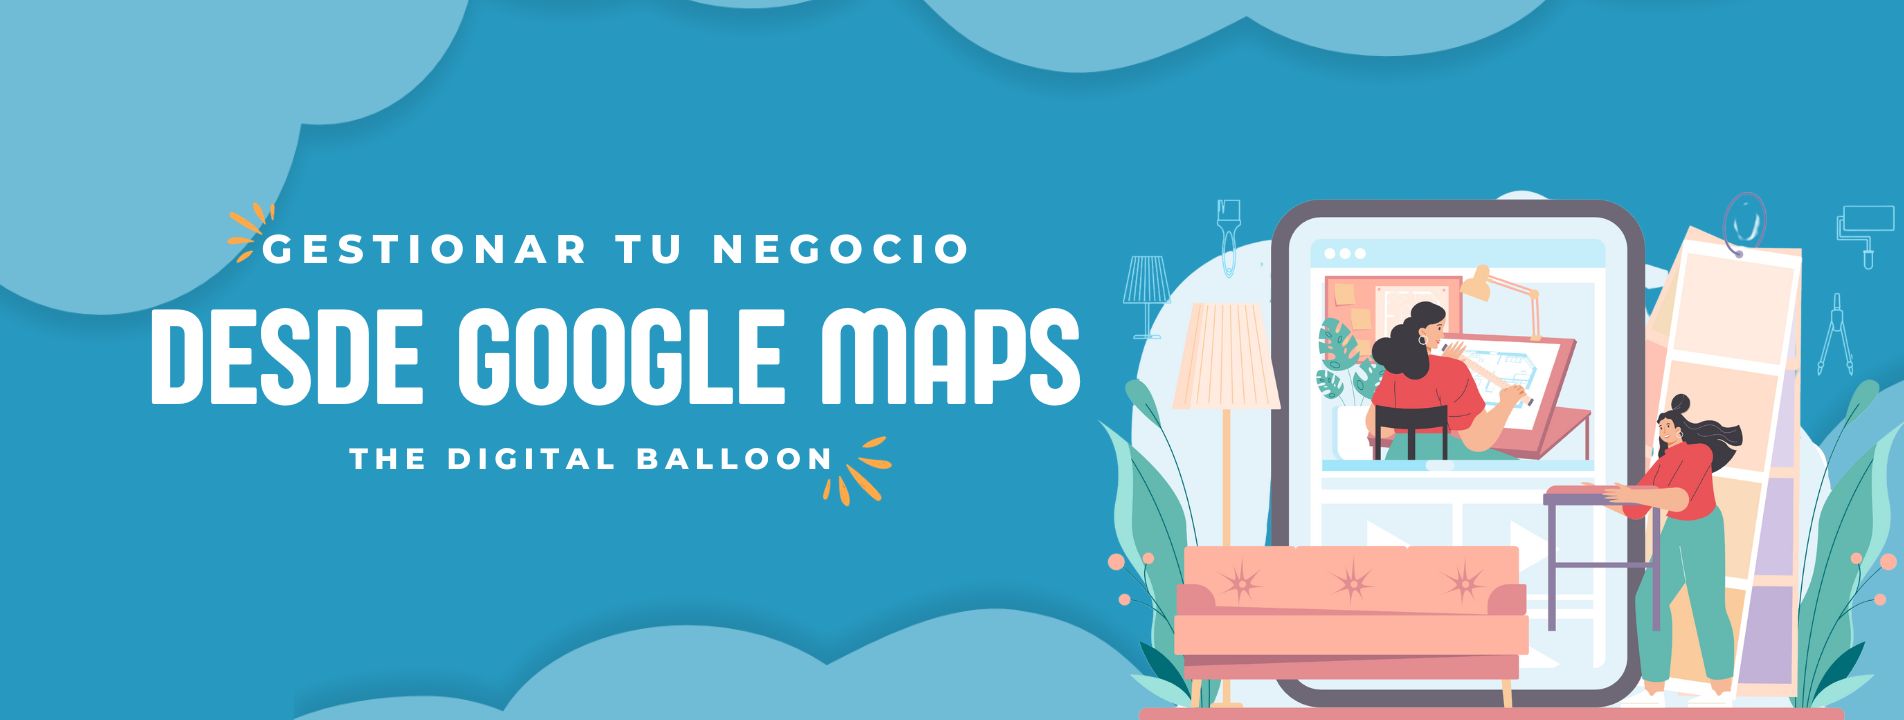 cómo gestionar tu negocio desde google maps